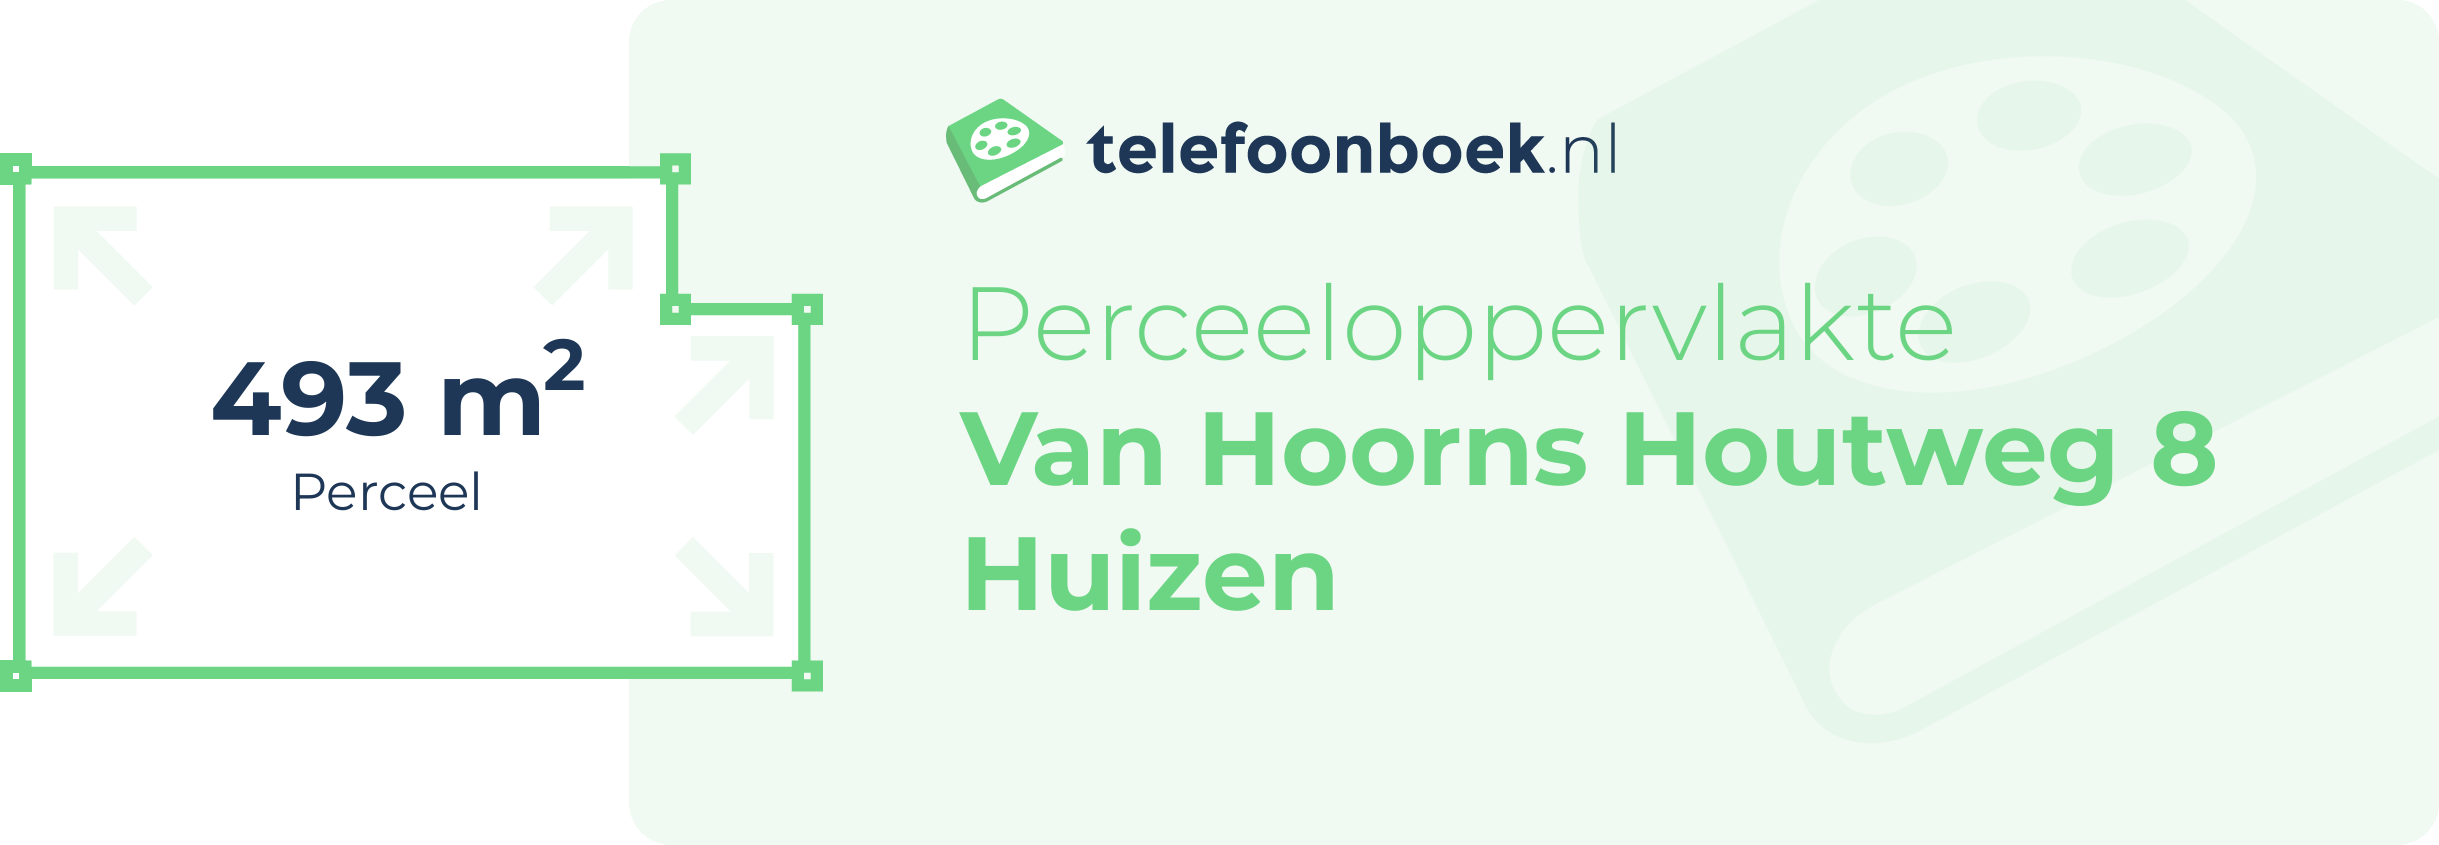 Perceeloppervlakte Van Hoorns Houtweg 8 Huizen